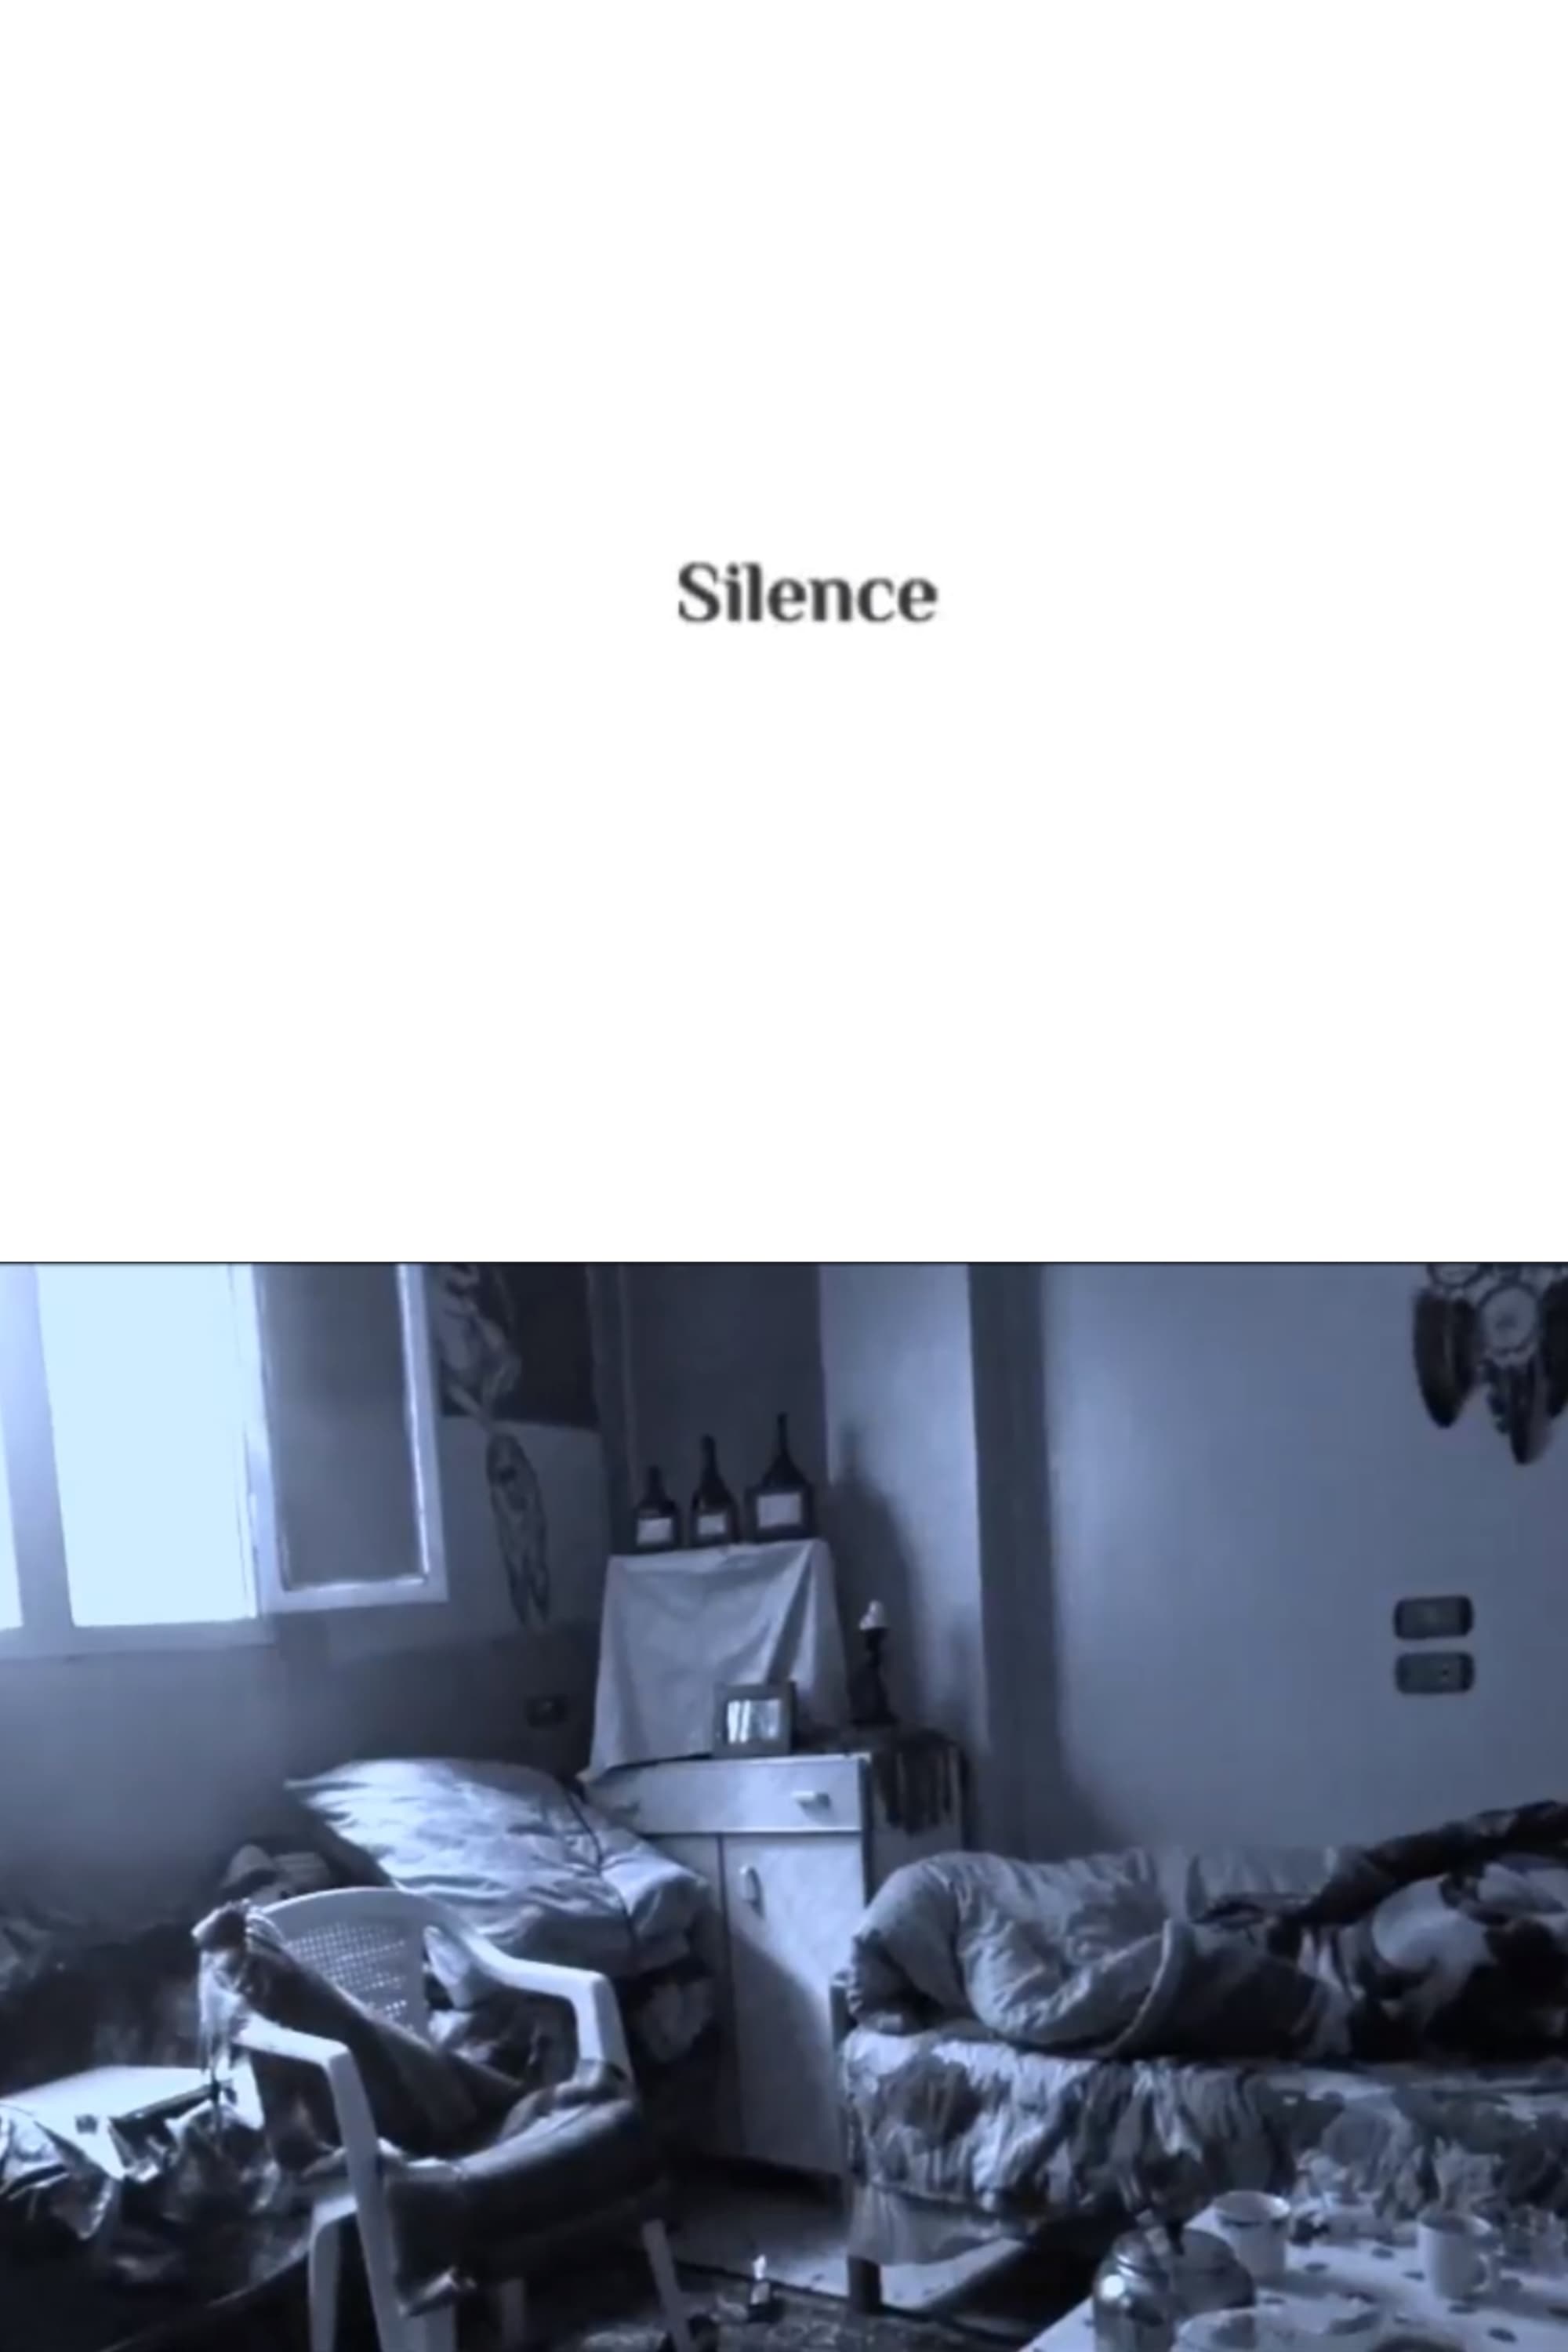 Silence